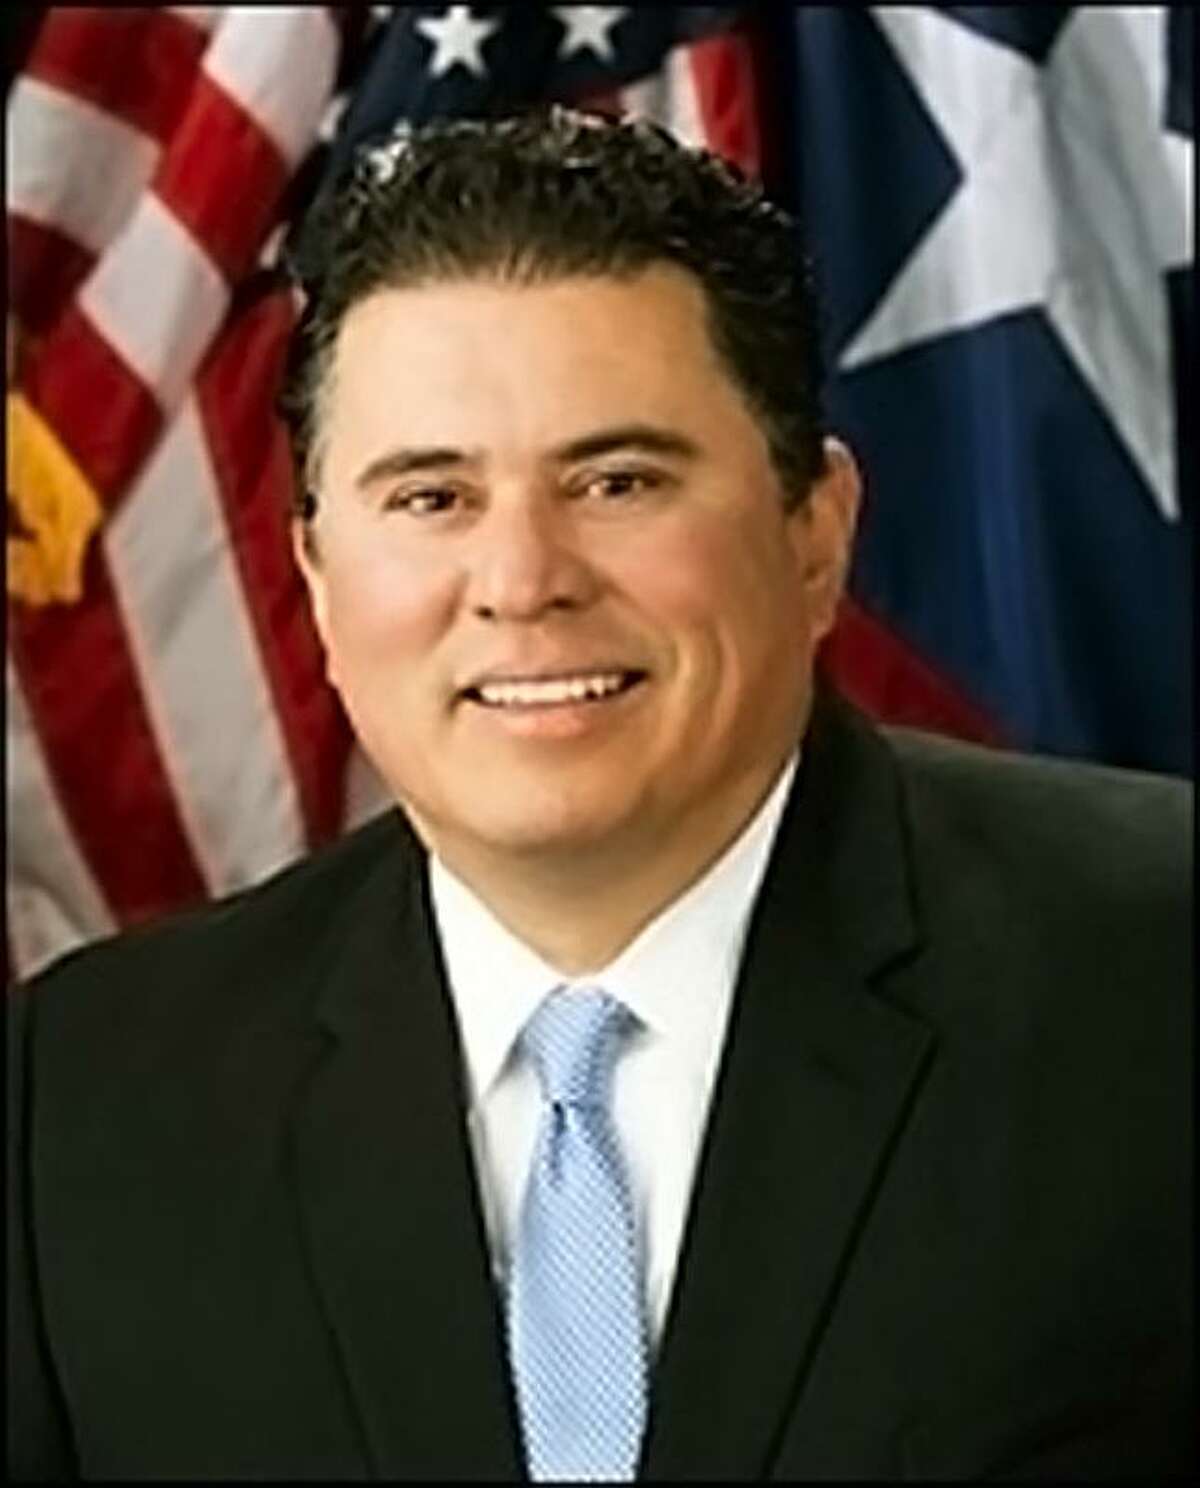 Secretary of State Rolando B. Pablos